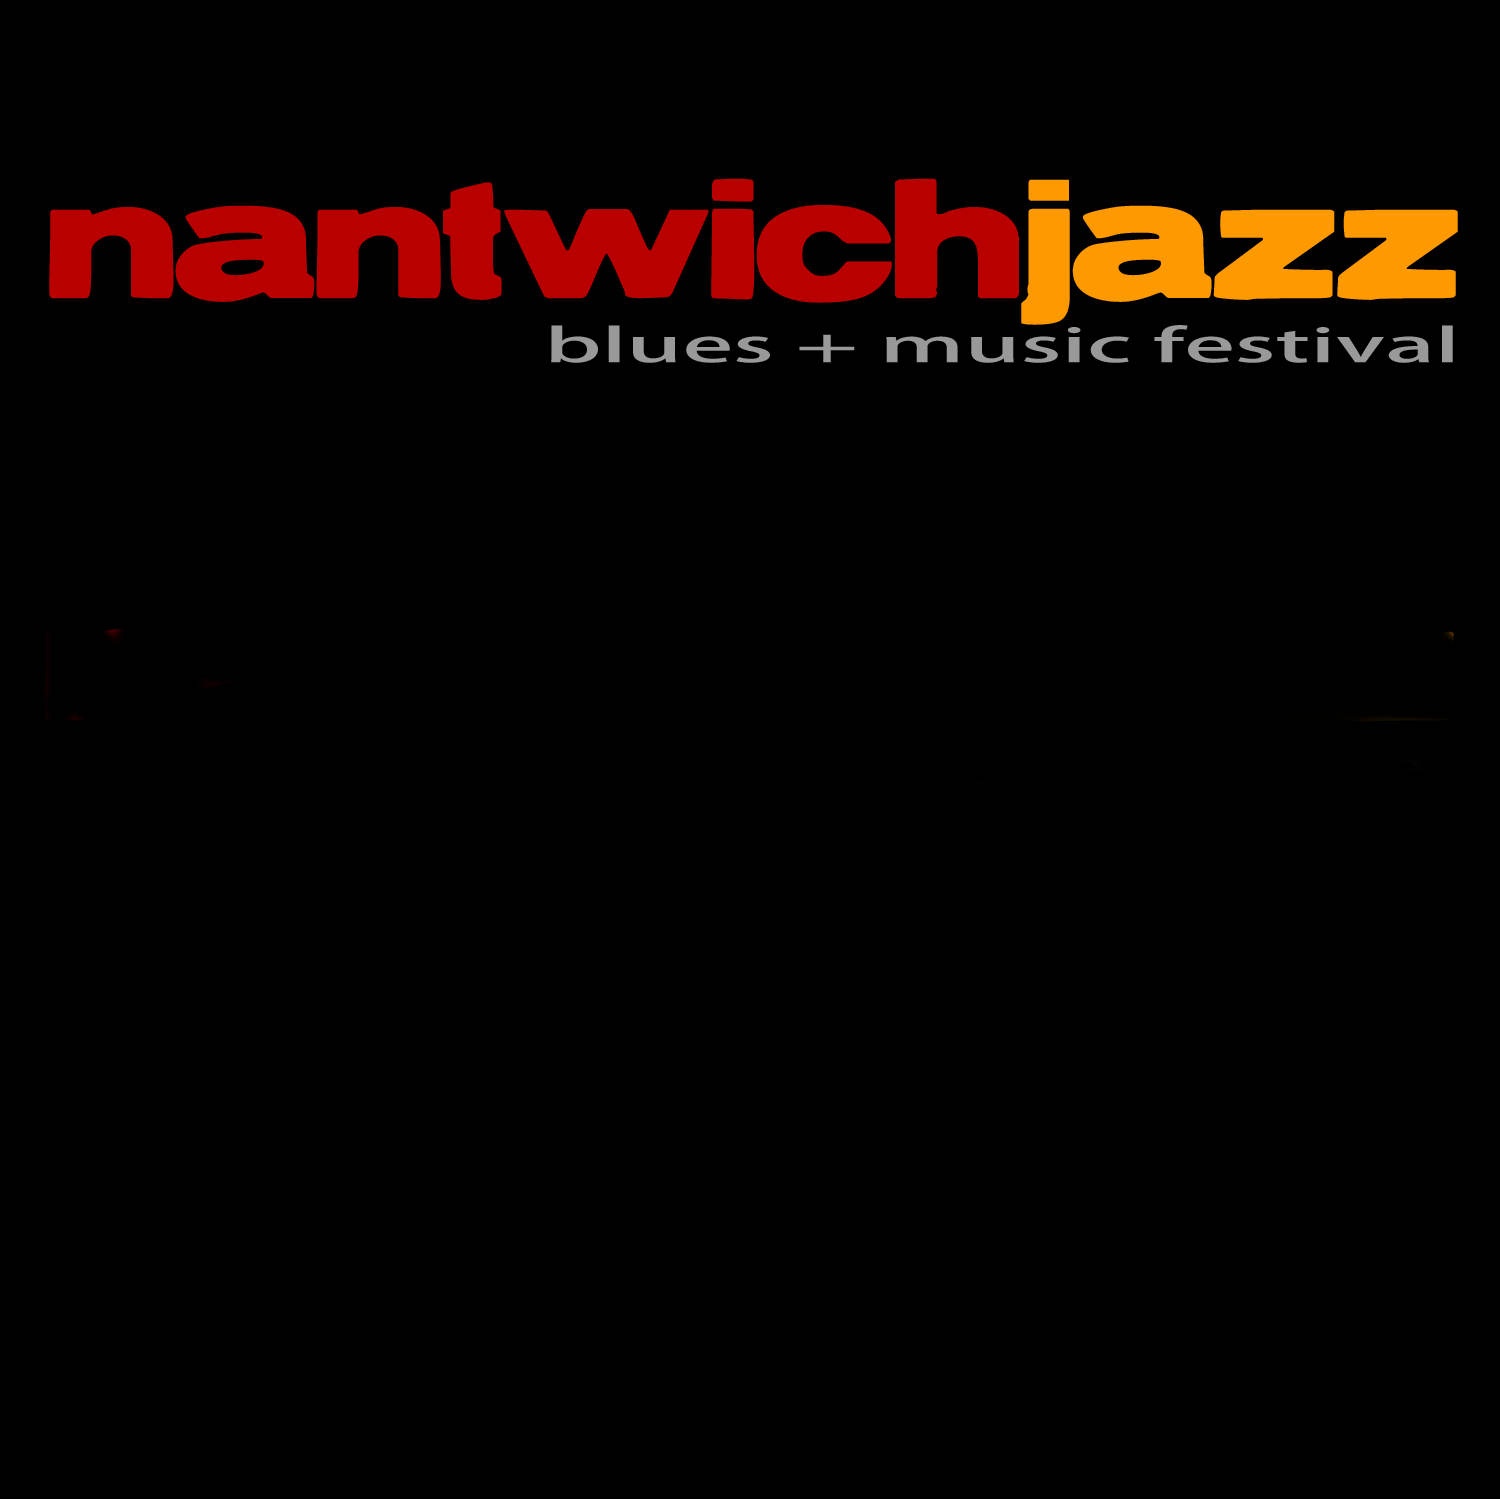 Buy Nantwich Jazz, Blues and Music Festival tickets, Nantwich Jazz